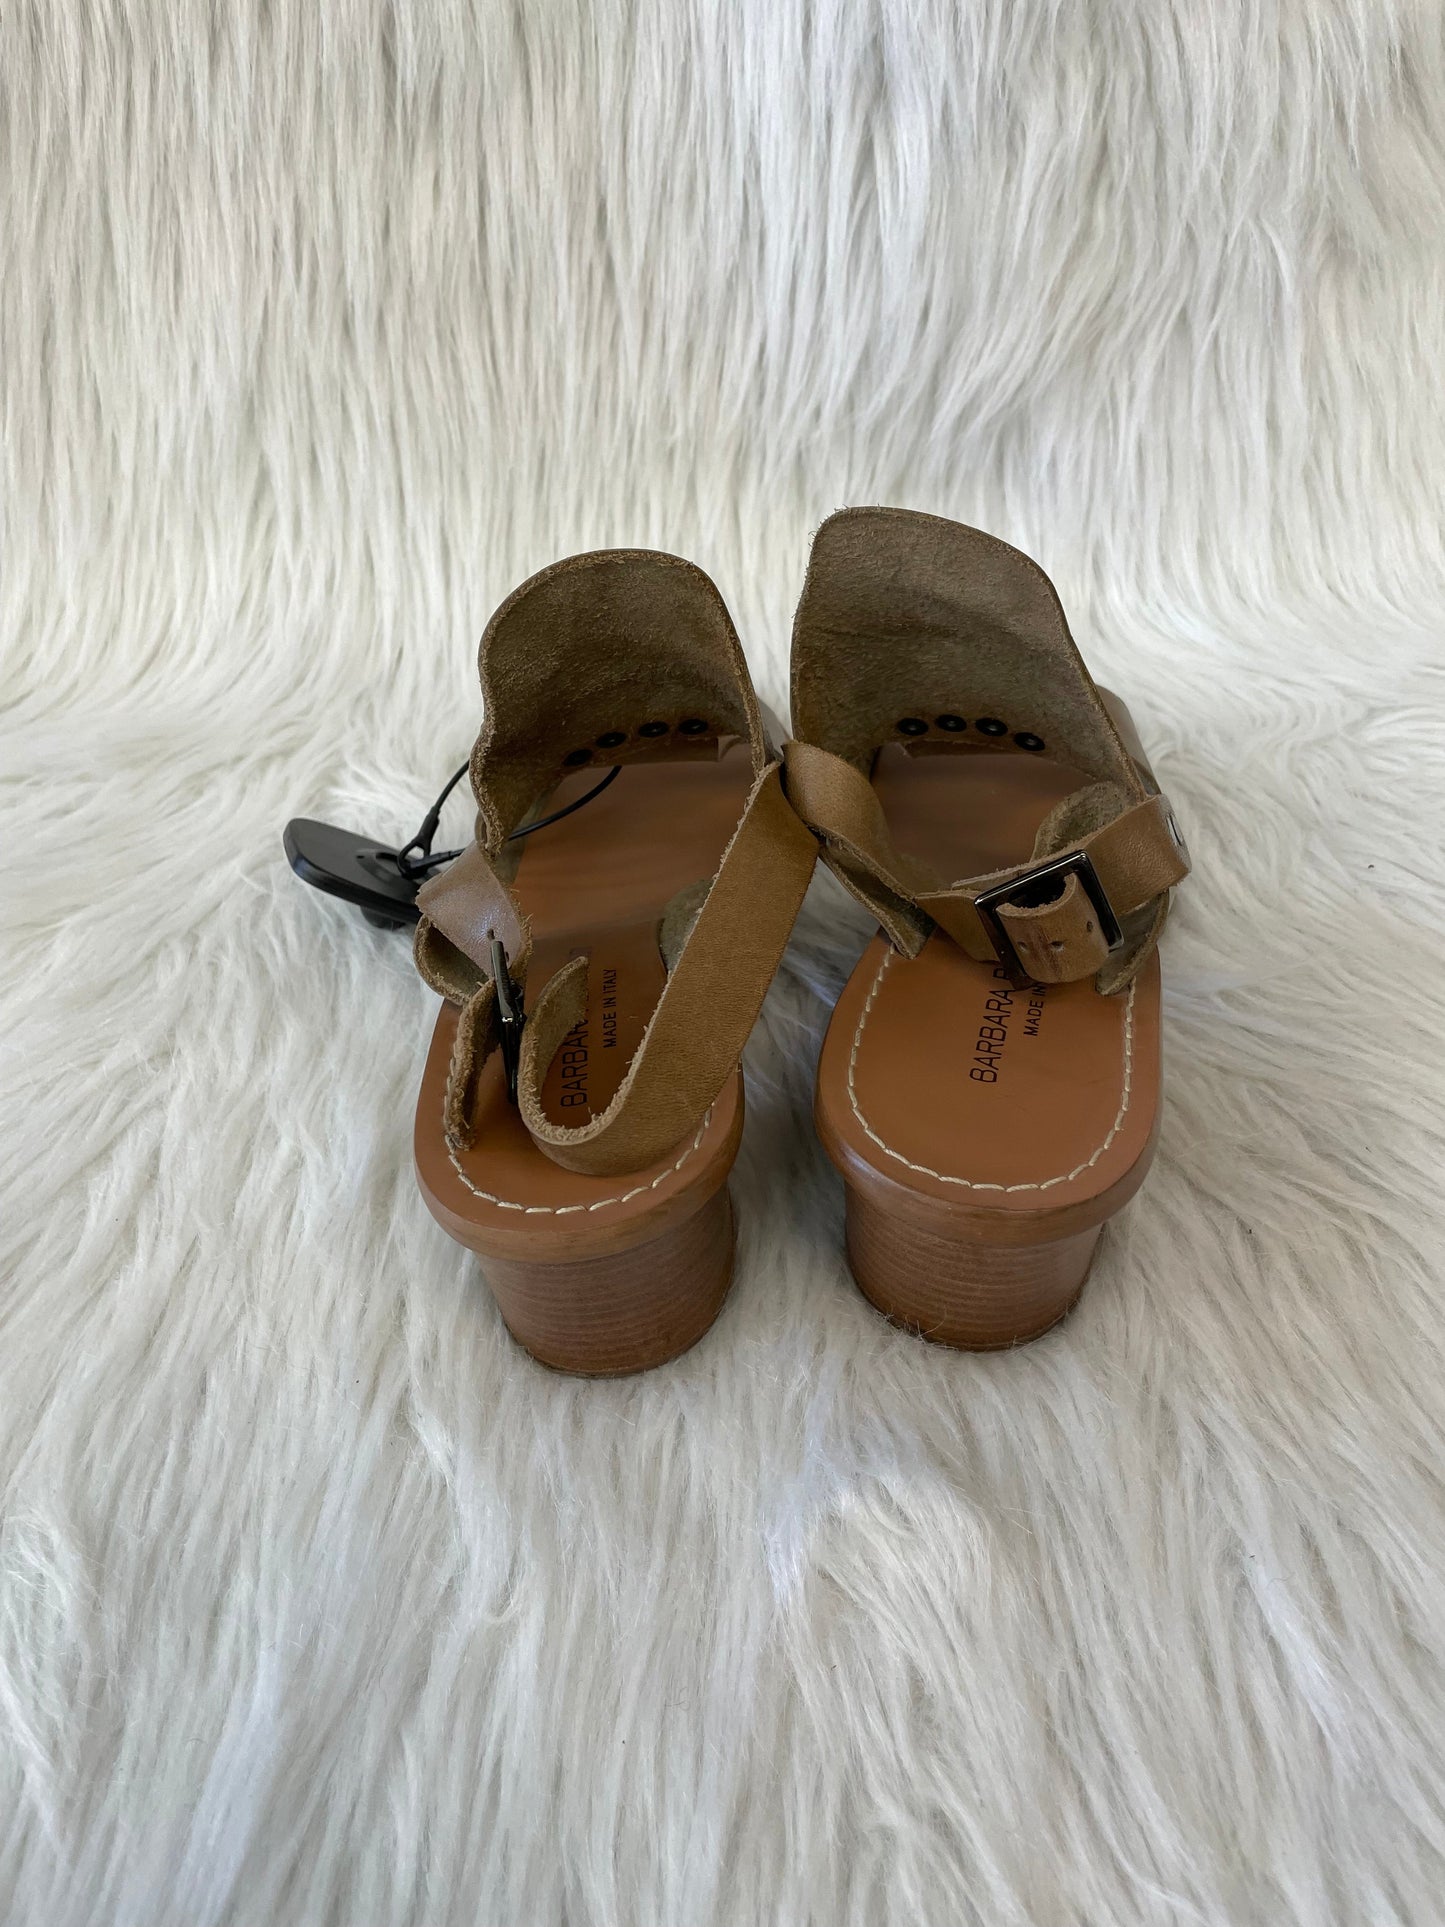 Brown Sandals Heels Block Cmc, Size 7